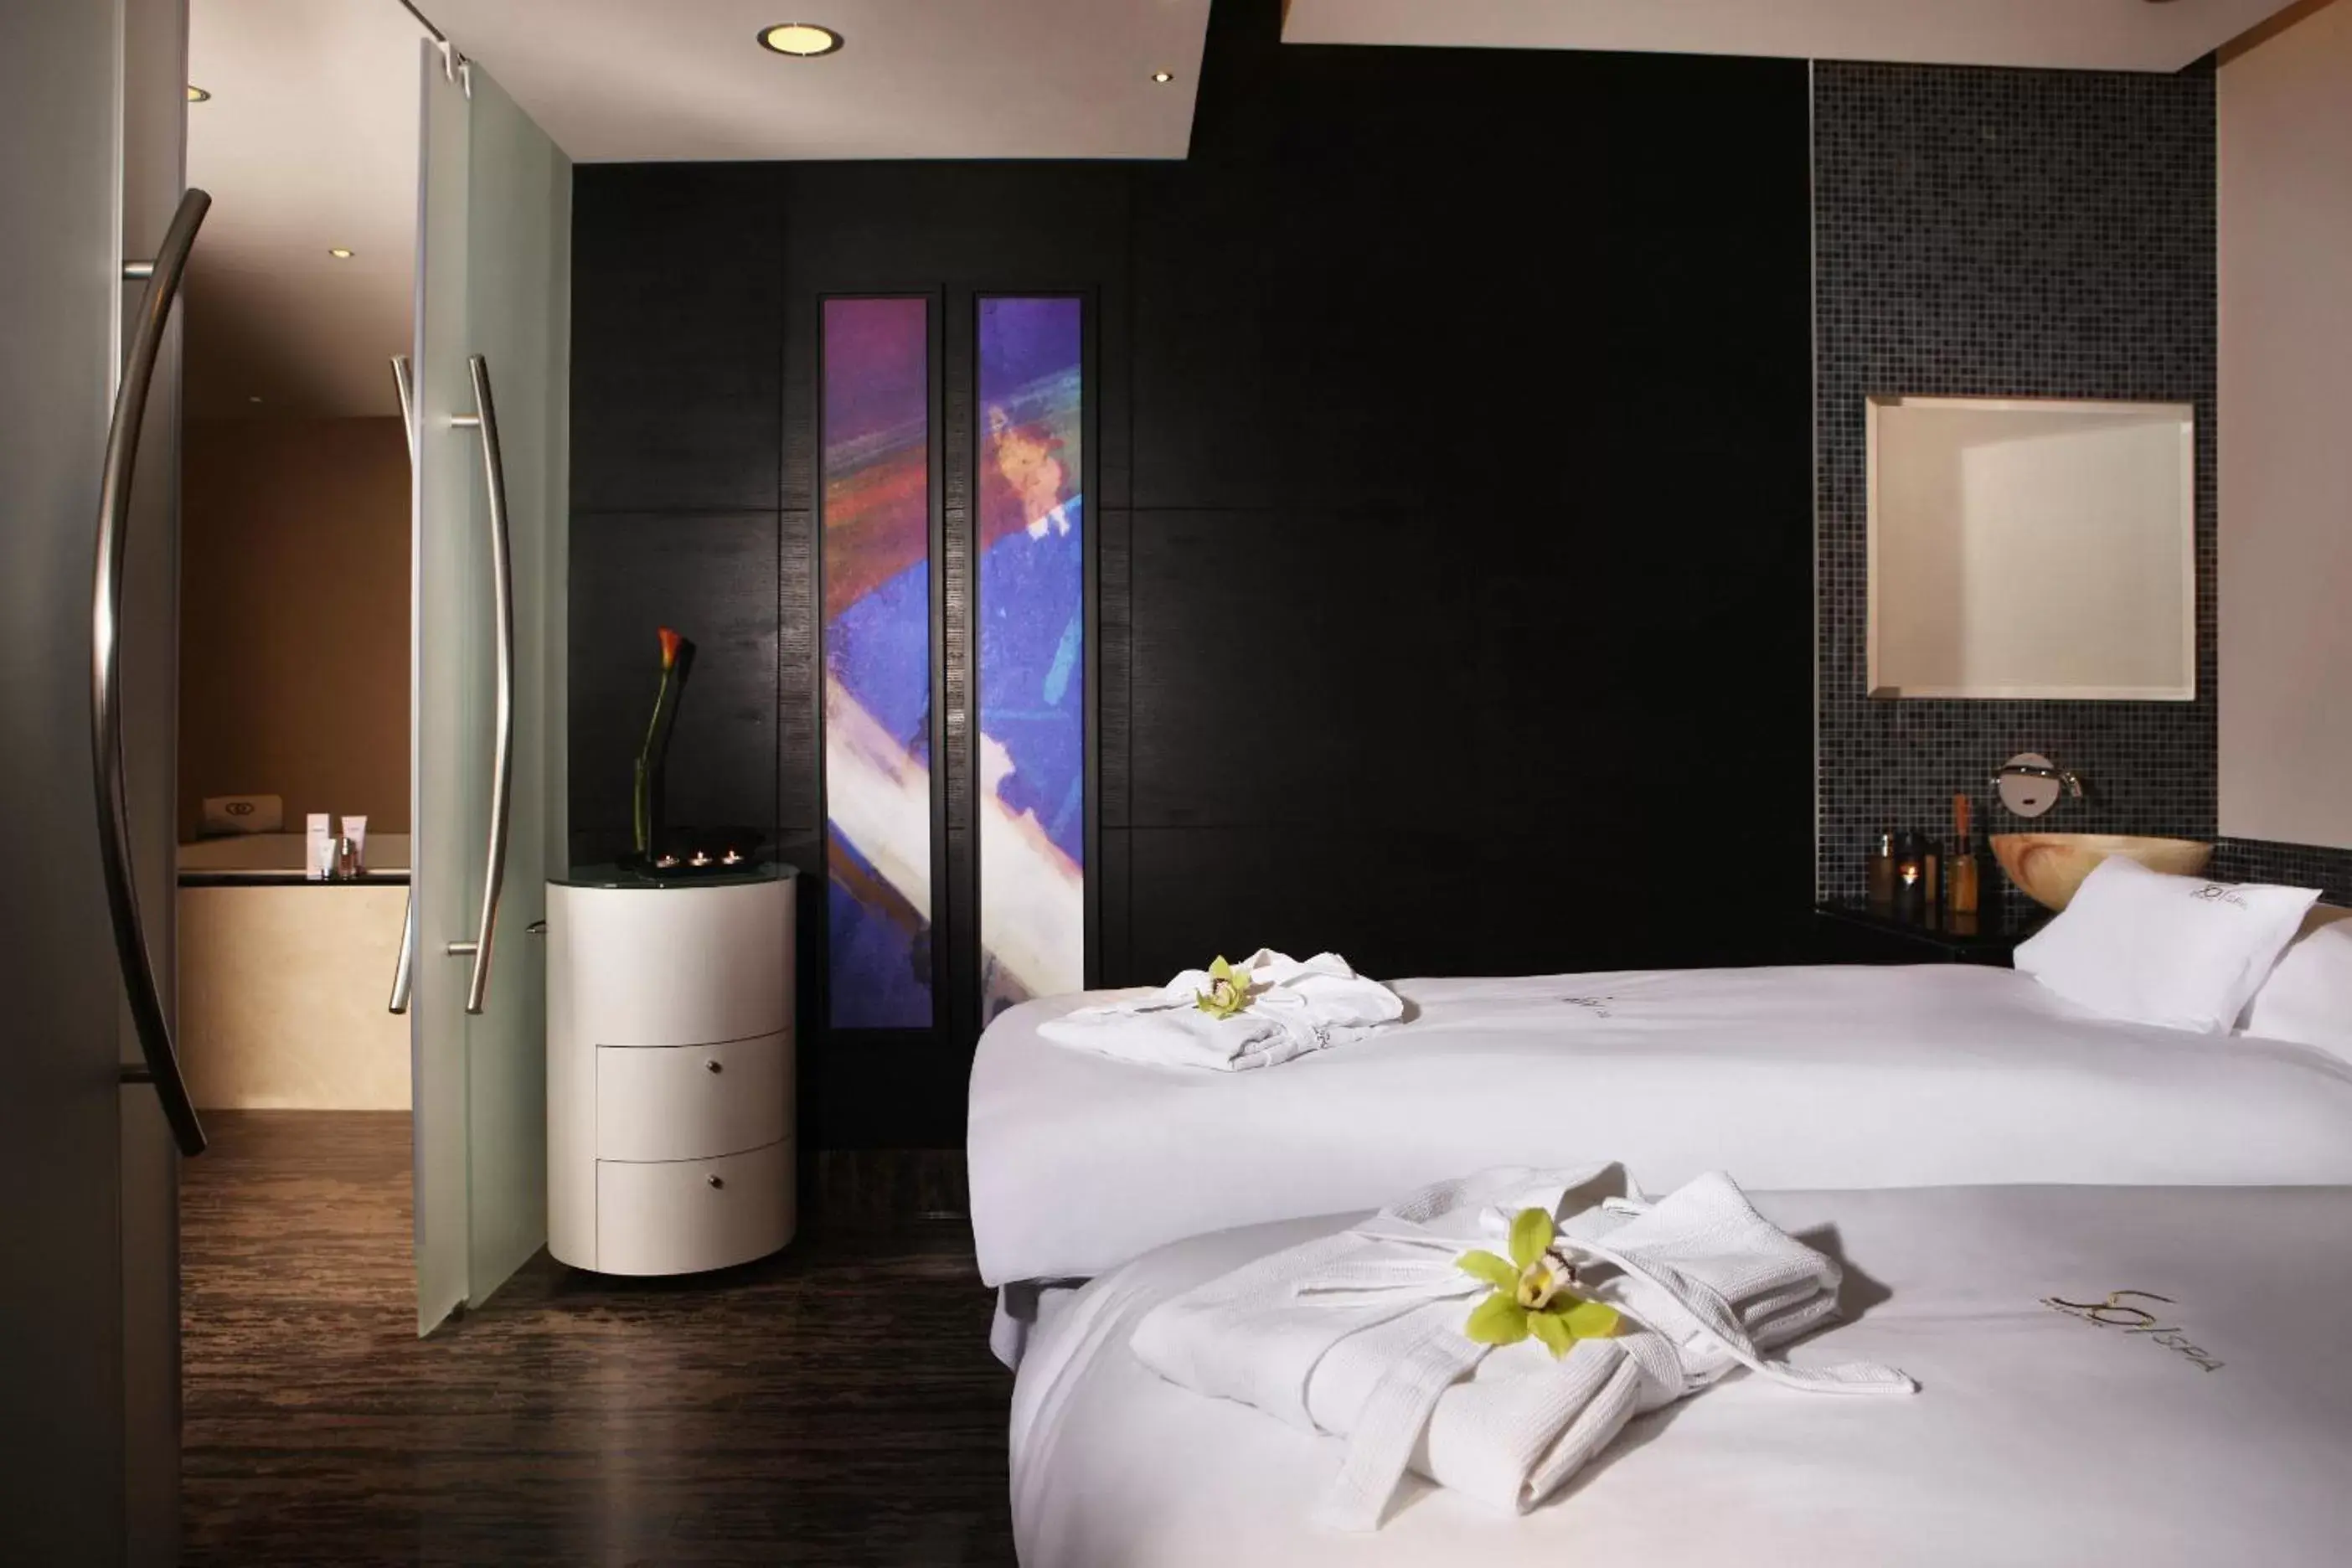 Spa and wellness centre/facilities, Bathroom in Sofitel Abu Dhabi Corniche